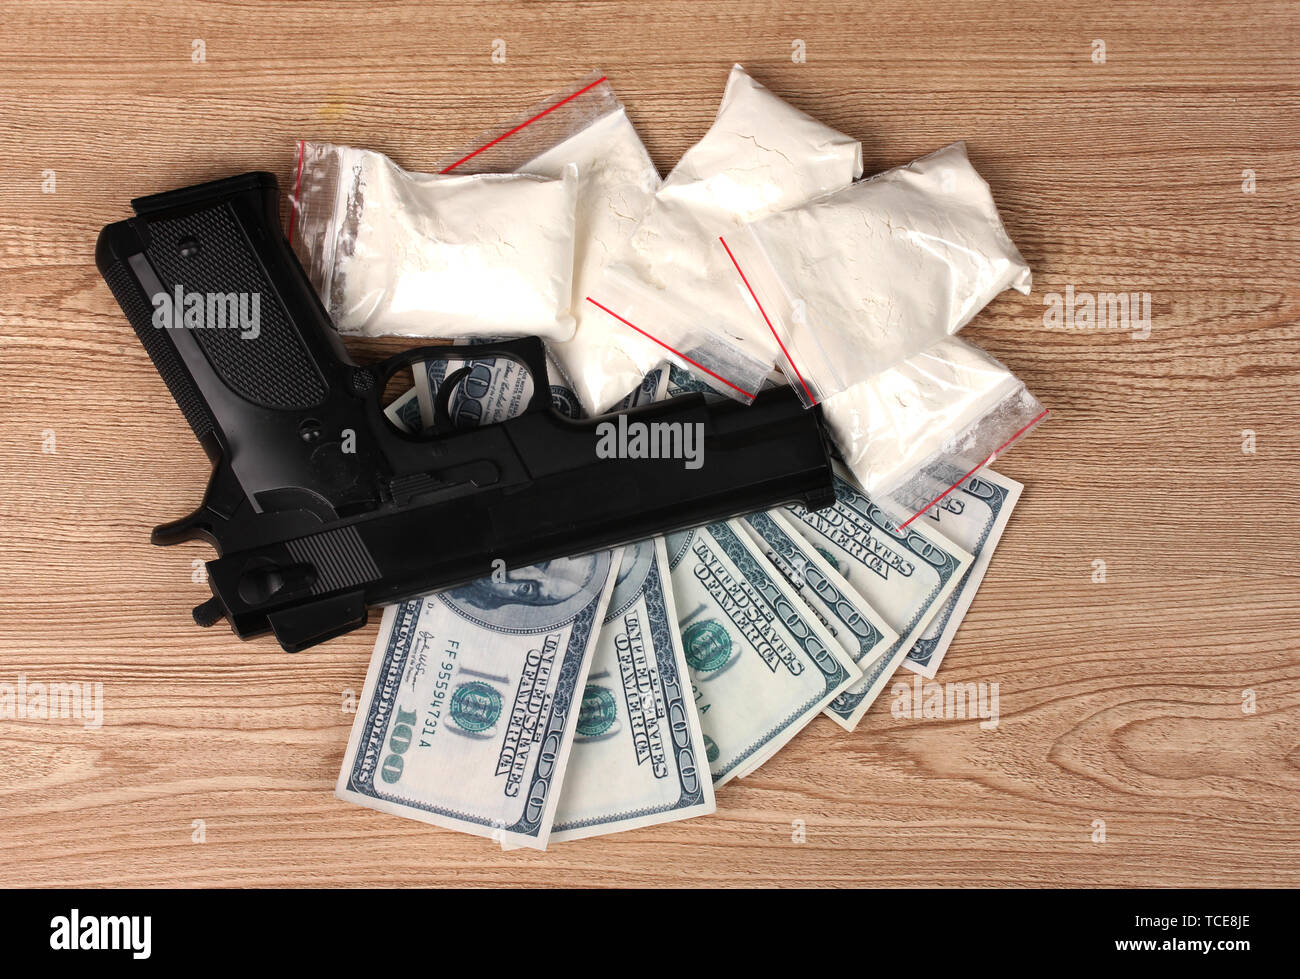 La cocaïne en paquets, des dollars avec pistolet sur fond de bois Banque D'Images